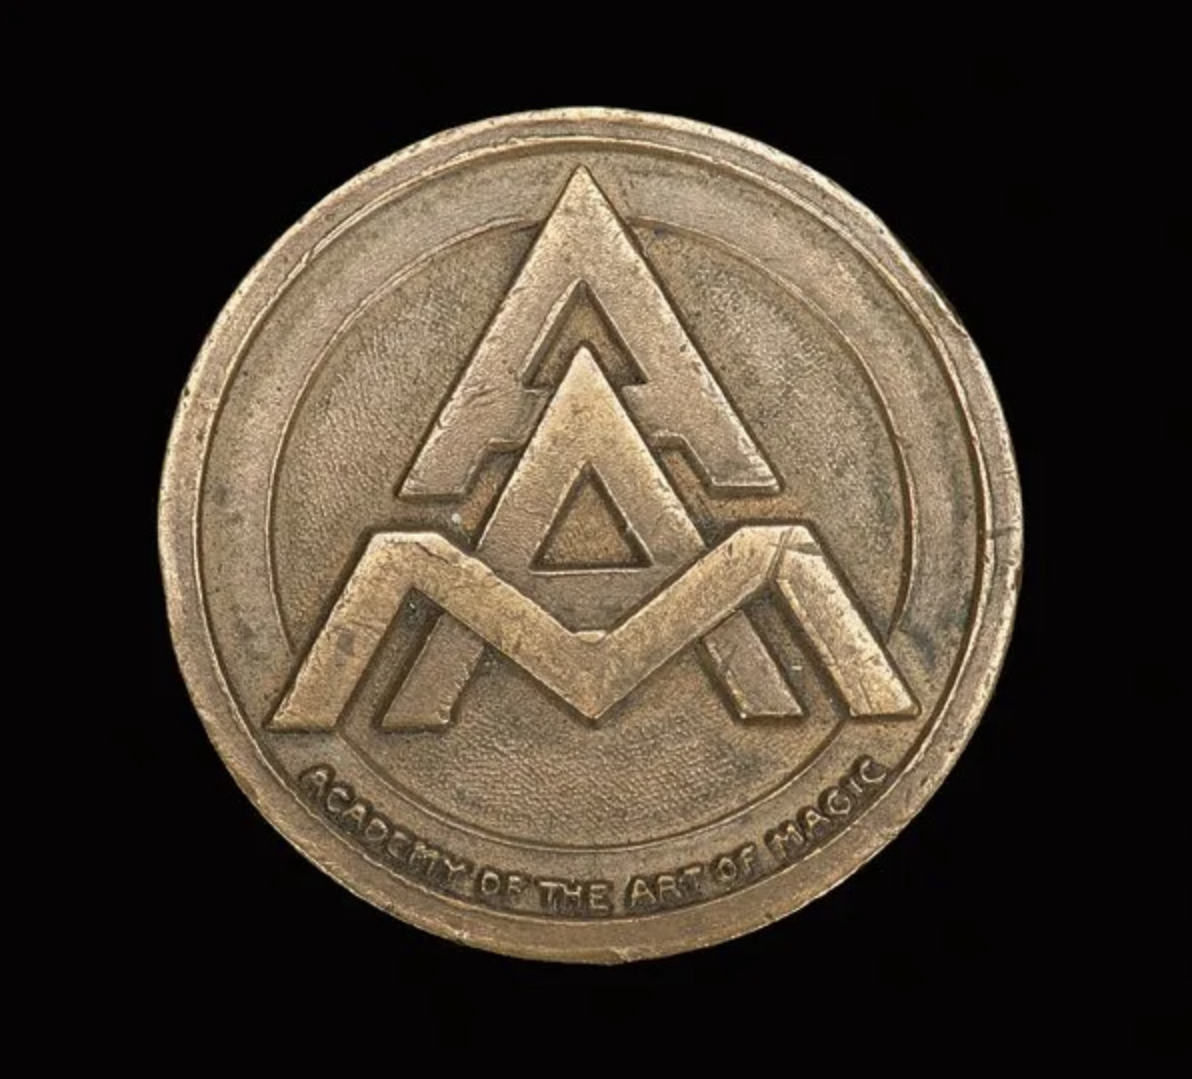 Cardini’s Academy of the Art of Magic medallion